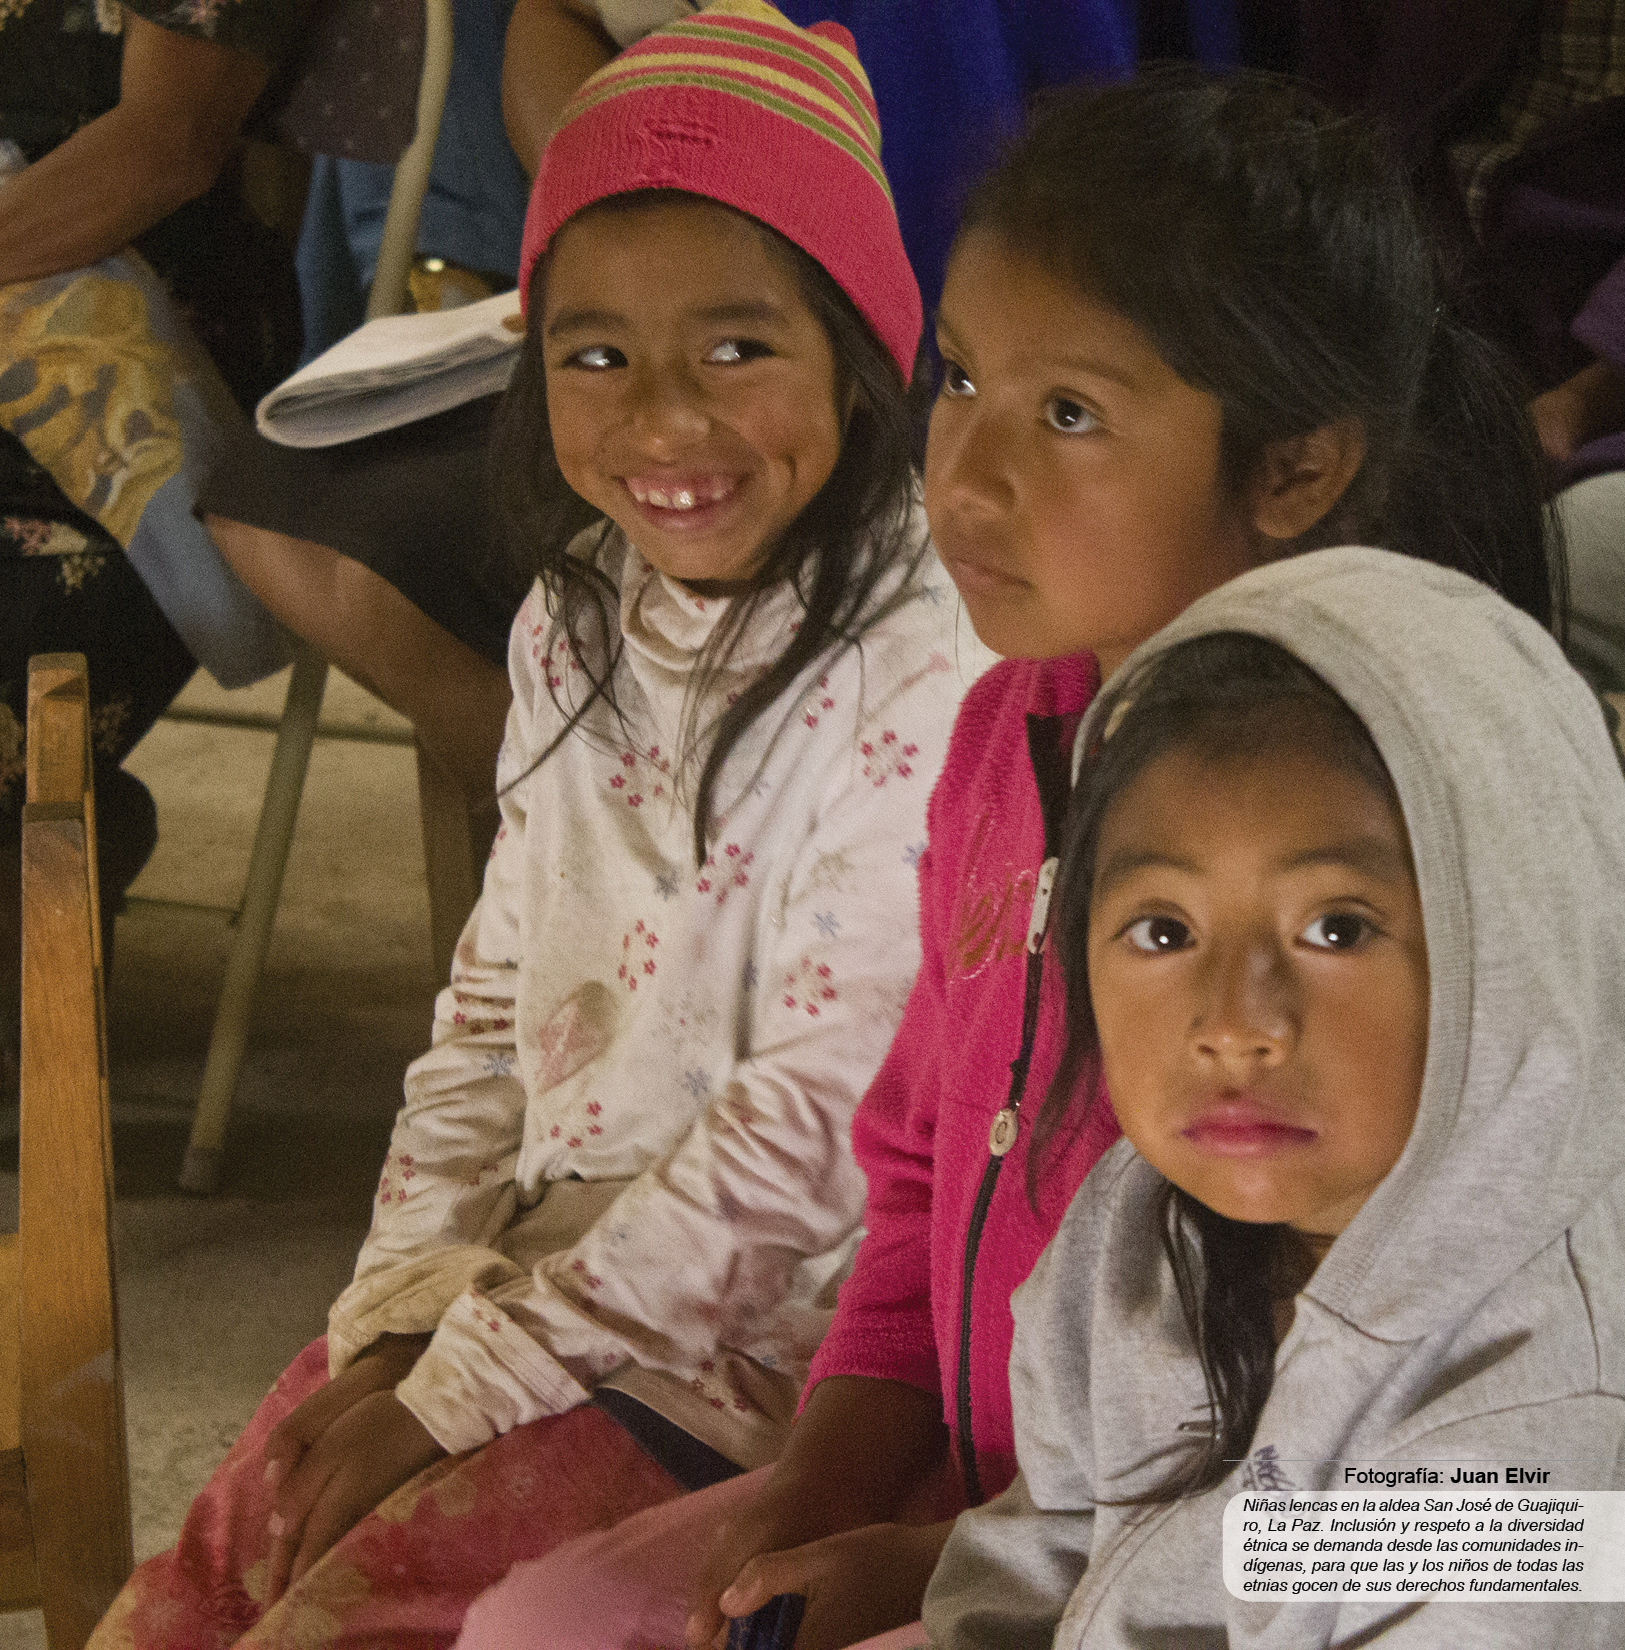 Niñas lencas en la aldea San José de Guajiquiro, La Paz. Inclusión y respeto a la diversidad étnica se demanda desde las comunidades indígenas, para que las y los niños de todas las etnias gocen de sus derechos fundamentales.